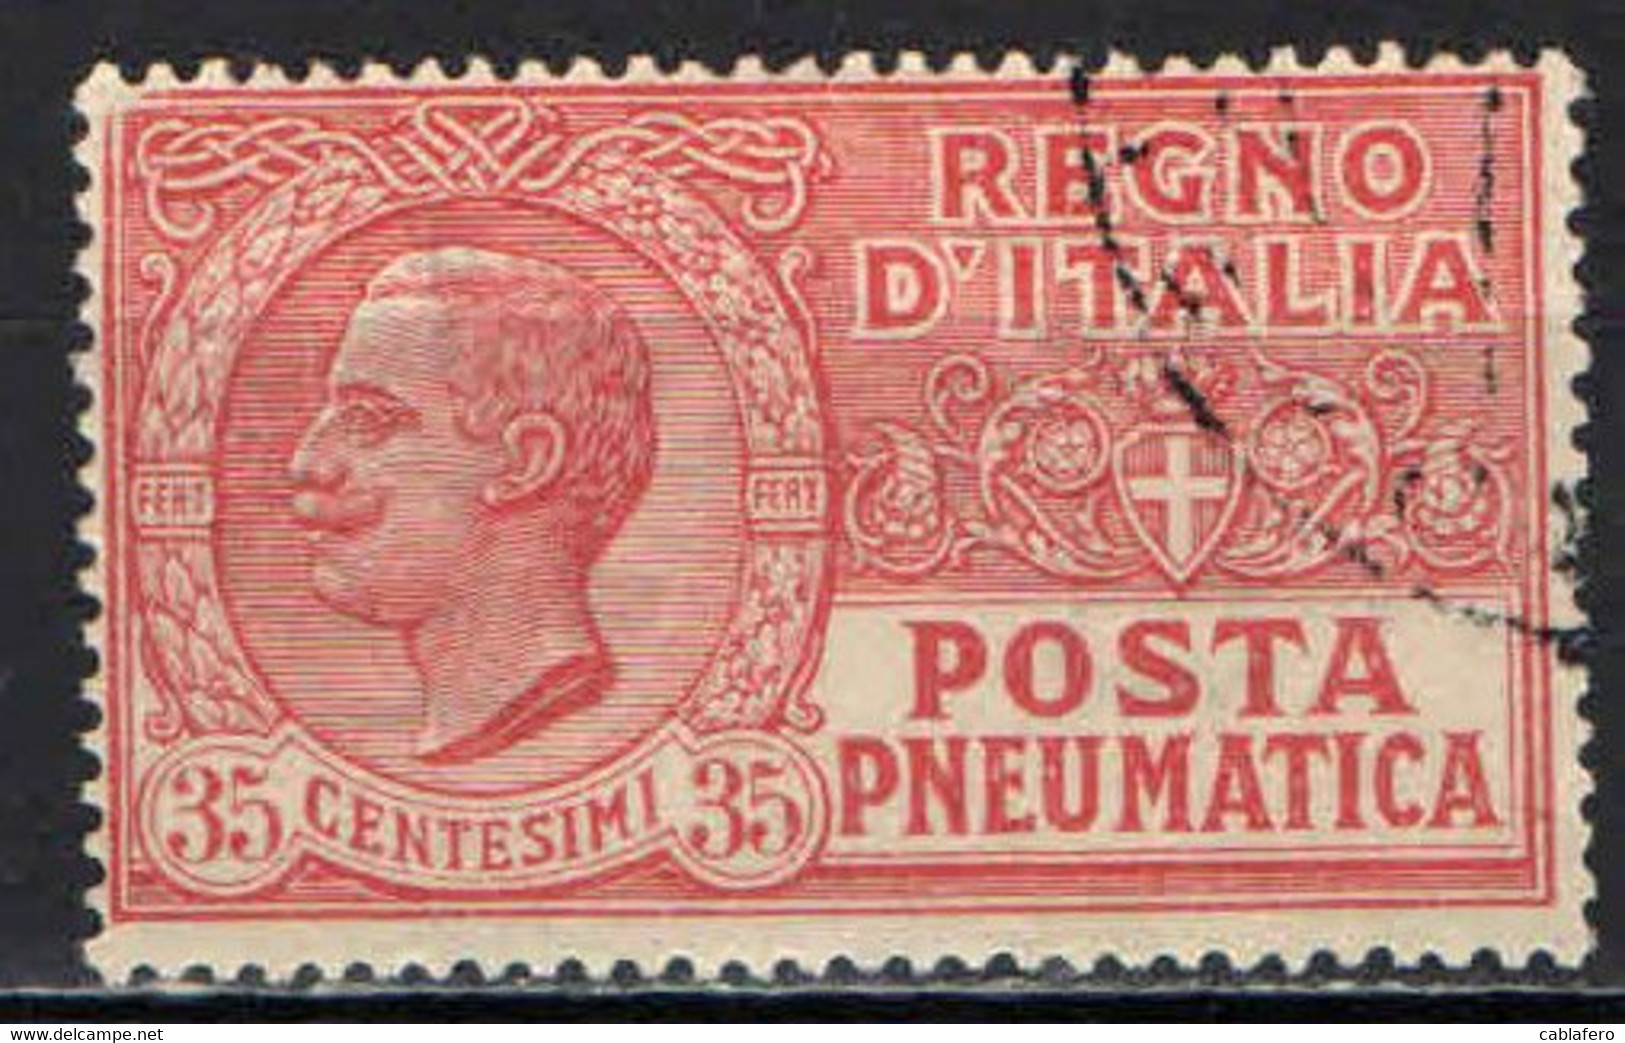 ITALIA REGNO - 1927 - POSTA PNEUMATICA - EFFIGIE DEL RE VITTORIO EMANUELE III - 35 CENT - USATO - Posta Pneumatica